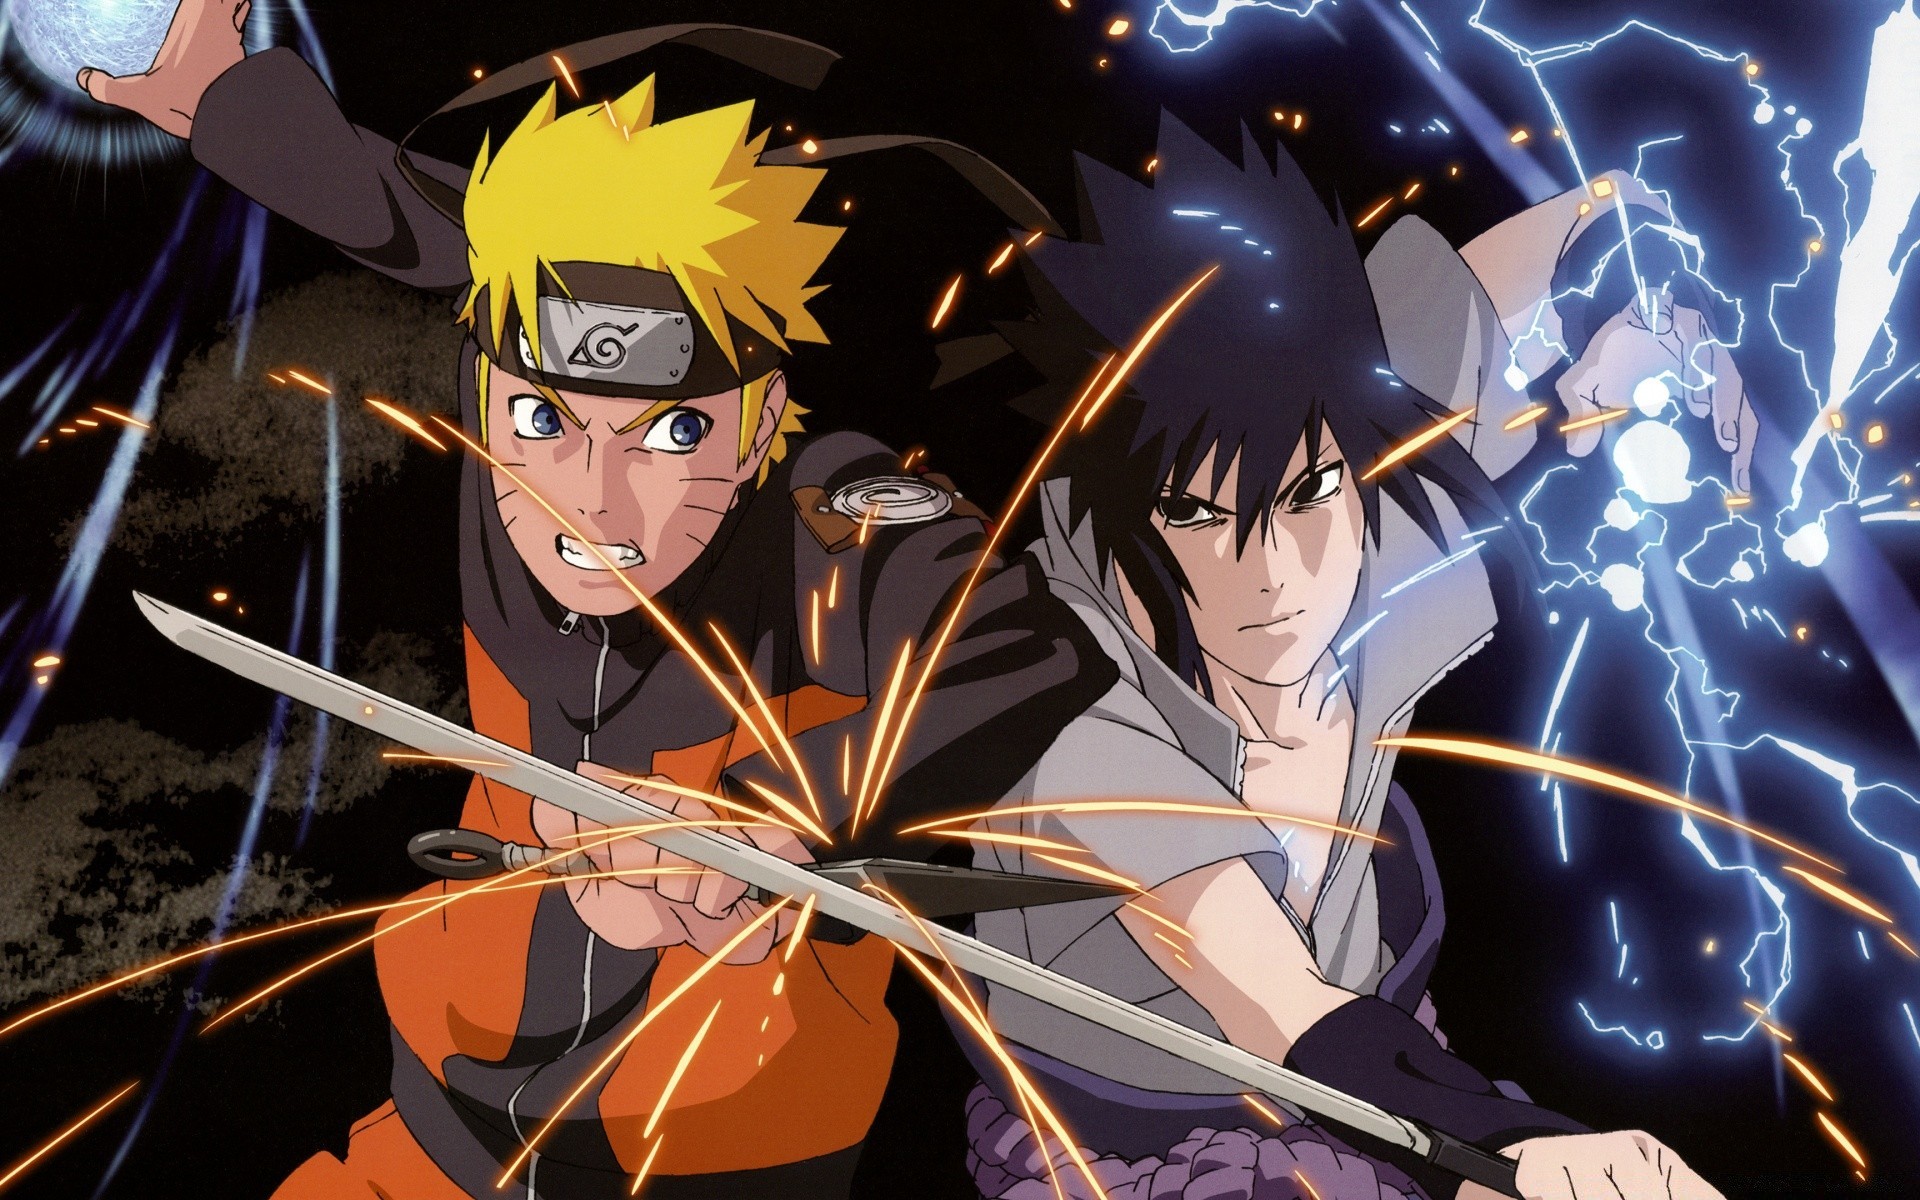 Tapety Naruto – 100 najlepsza tapet do pobrania za darmo